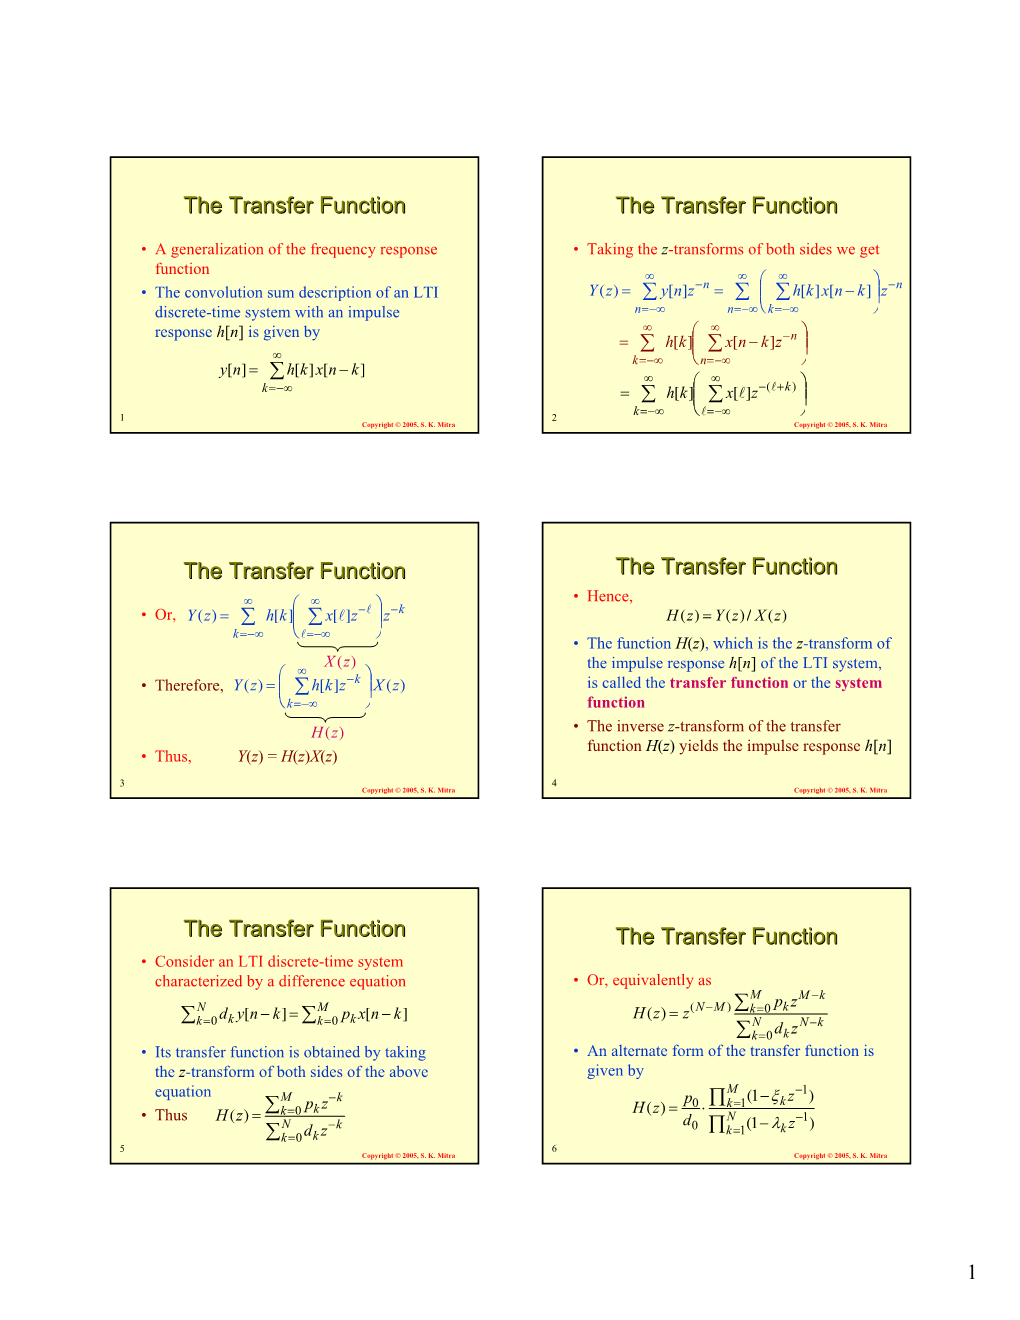 The Transfer Function the Transfer Function